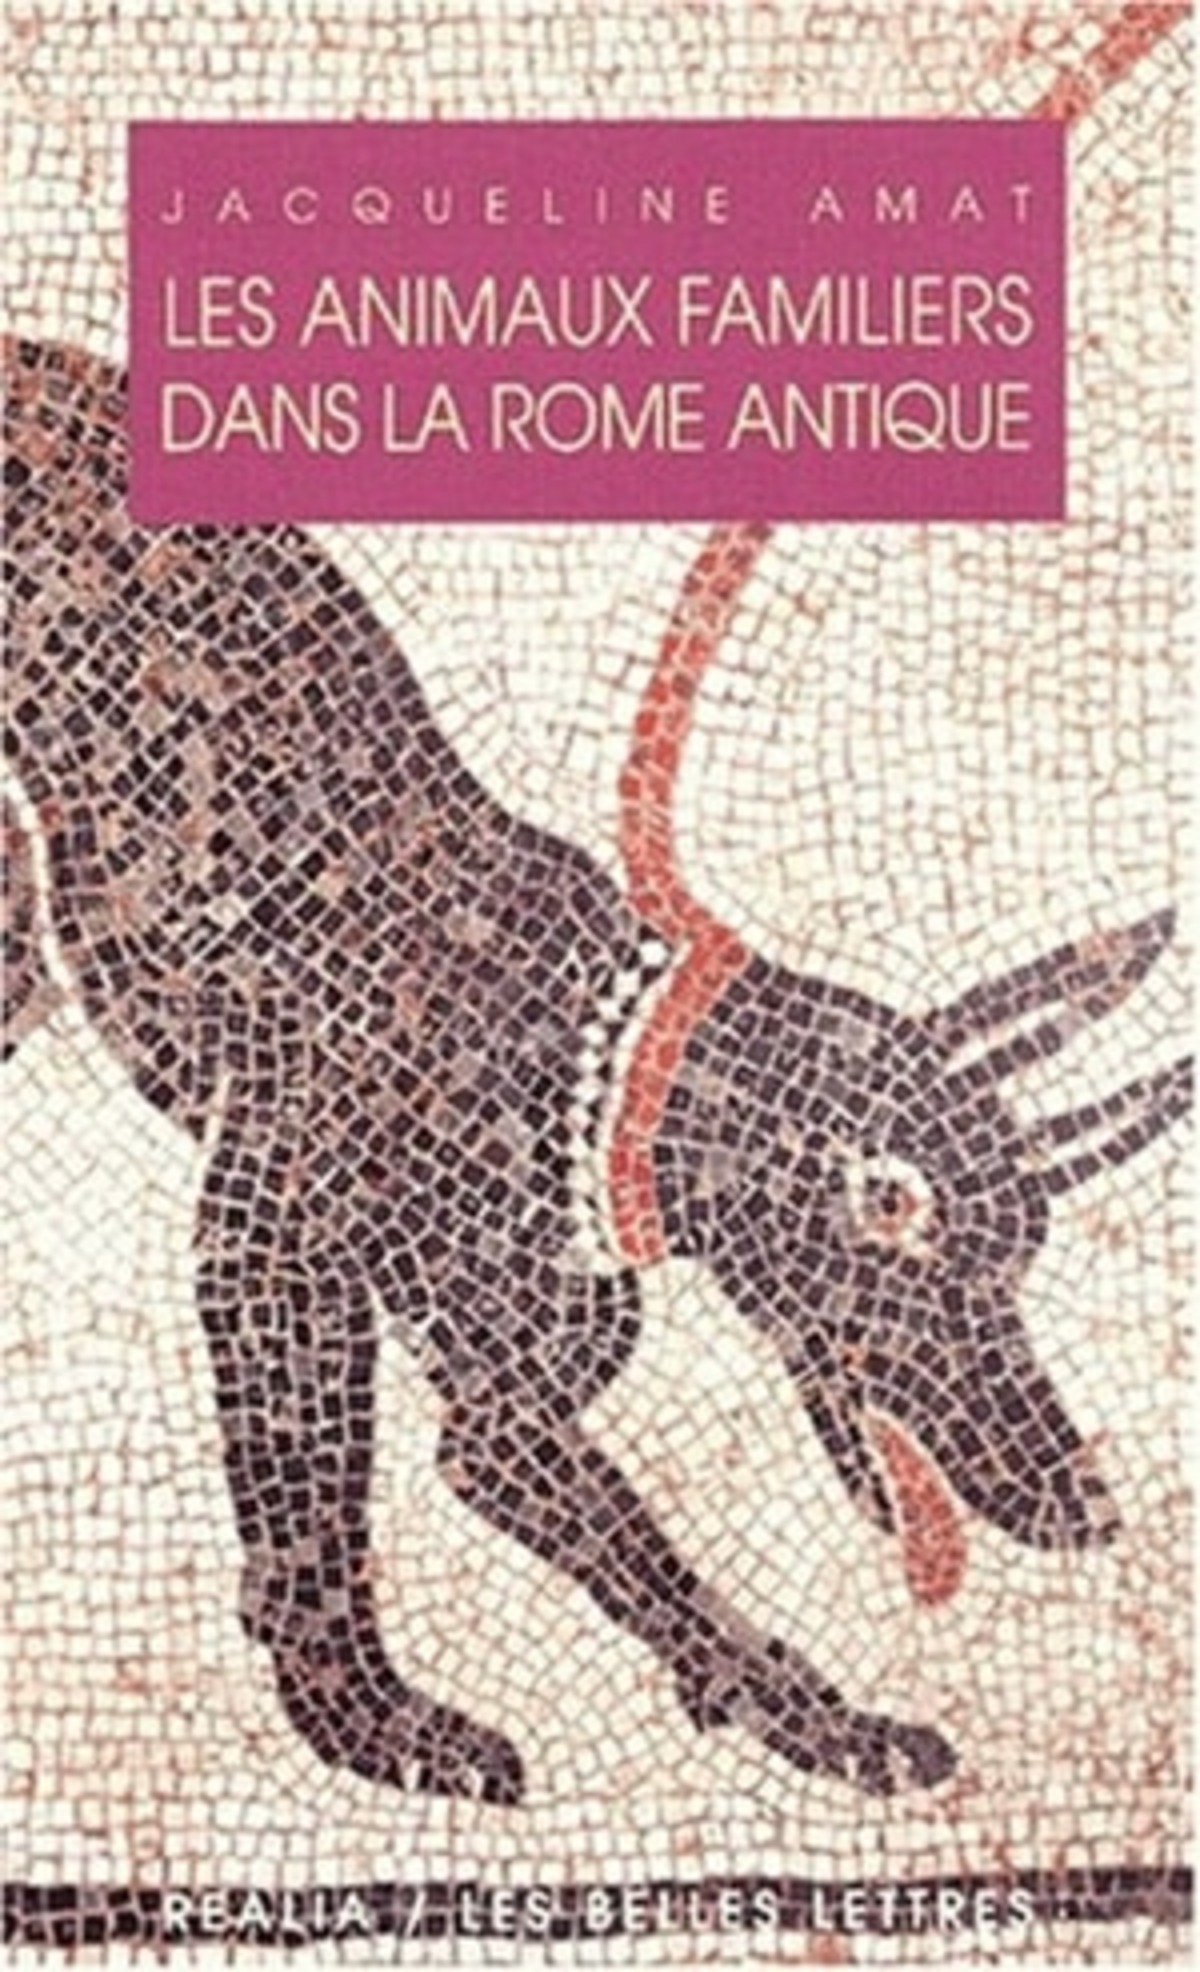 Les Animaux familiers dans la Rome antique